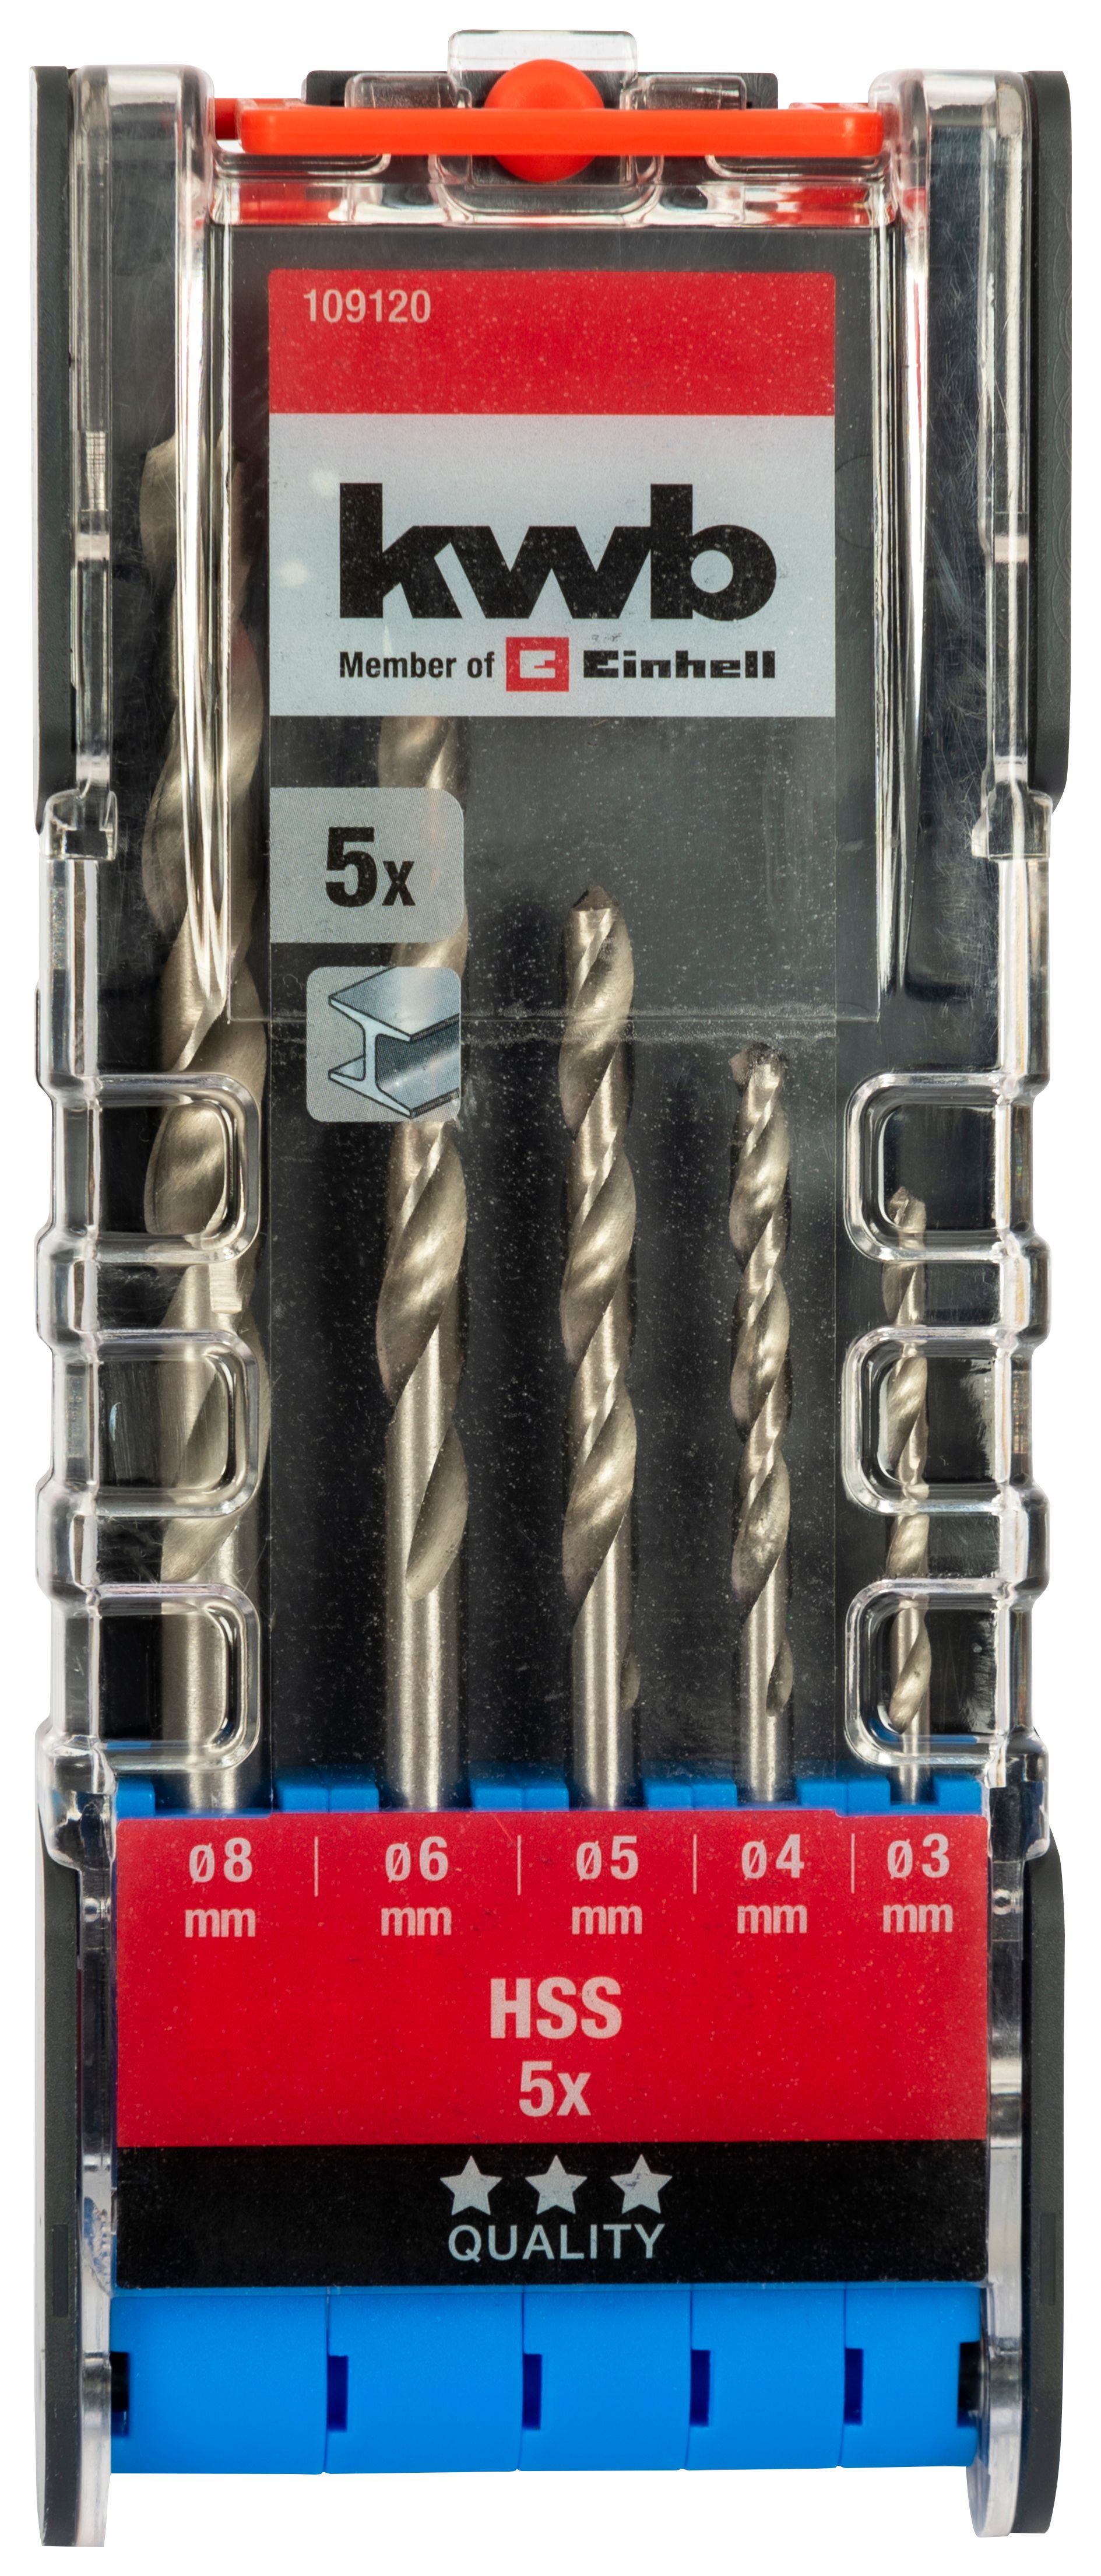 Einhell Kwb HSS Metal Drill Bit Set - 5 Pack